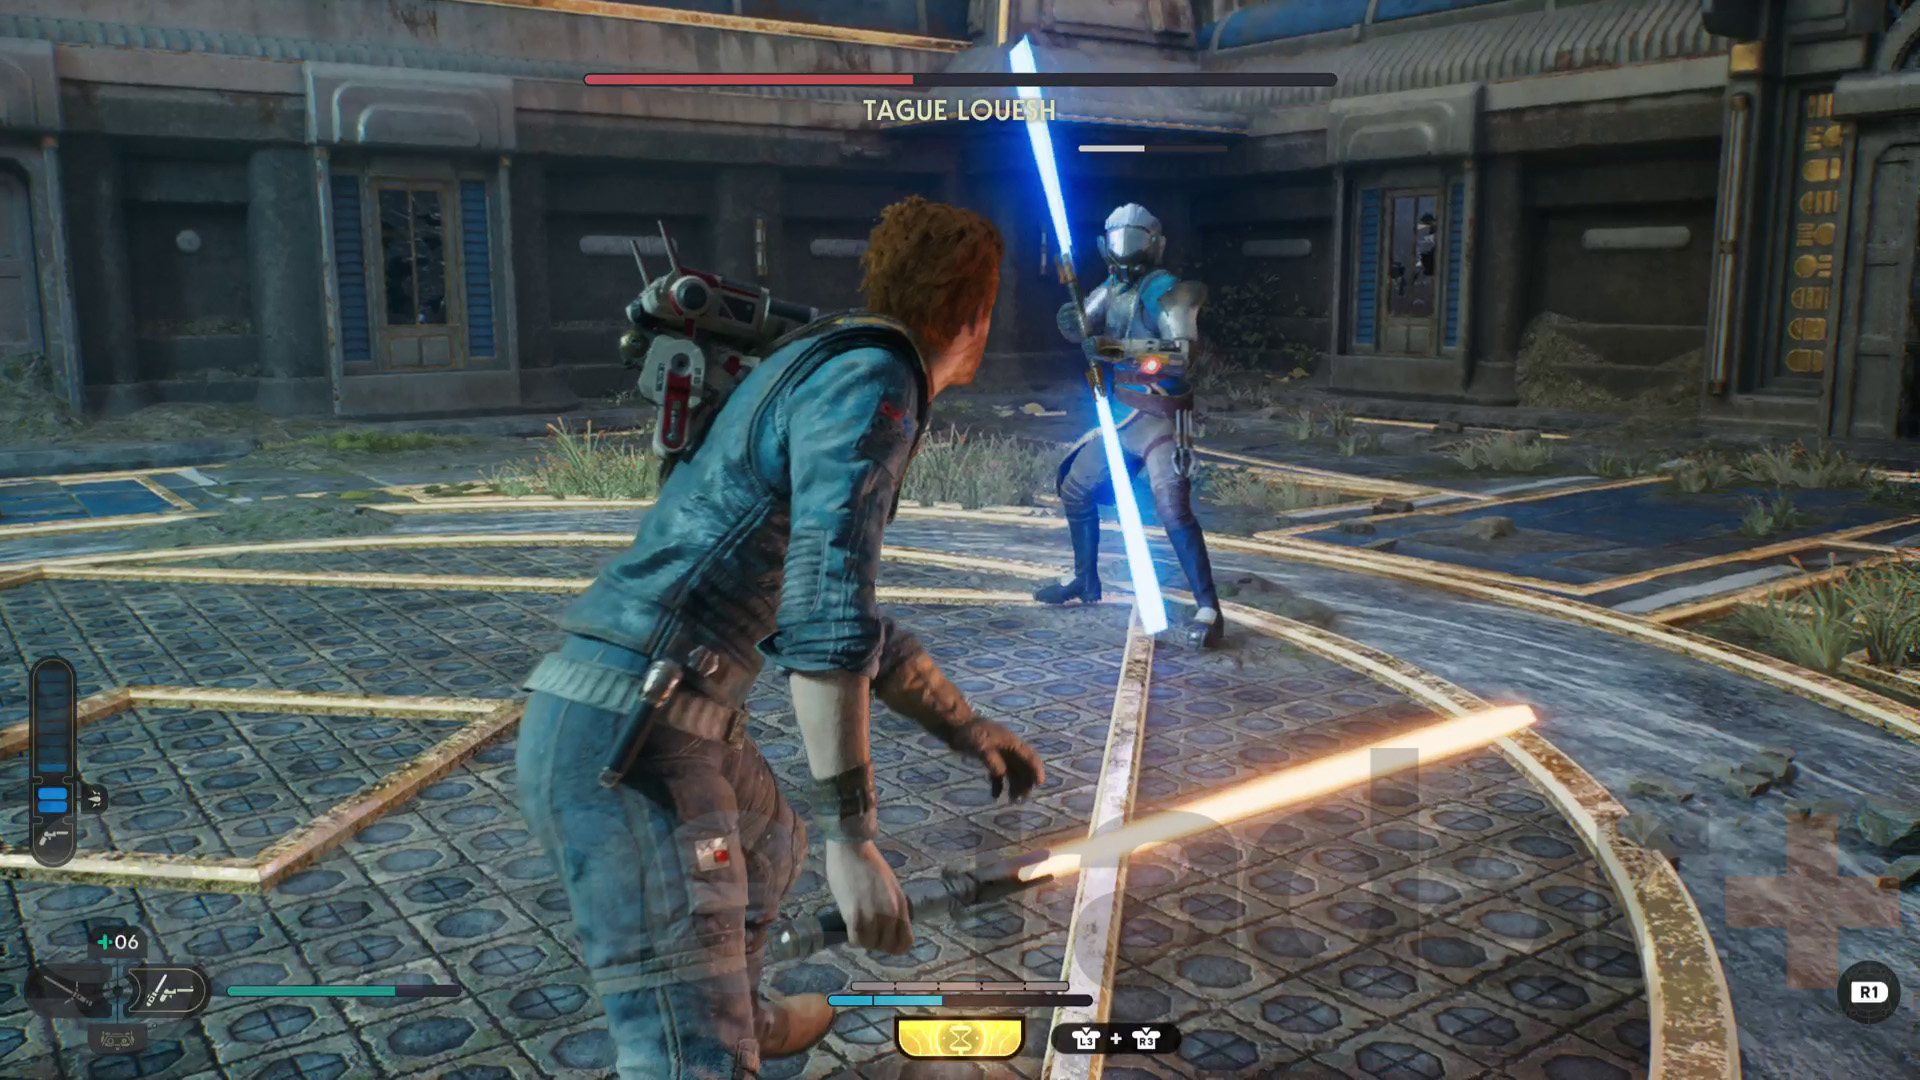 Star Wars Jedi Survivor Koboh walkthrough research tanalorr Cal bojuje s nájezdníkem se světelným mečem jménem Tague Louesh.